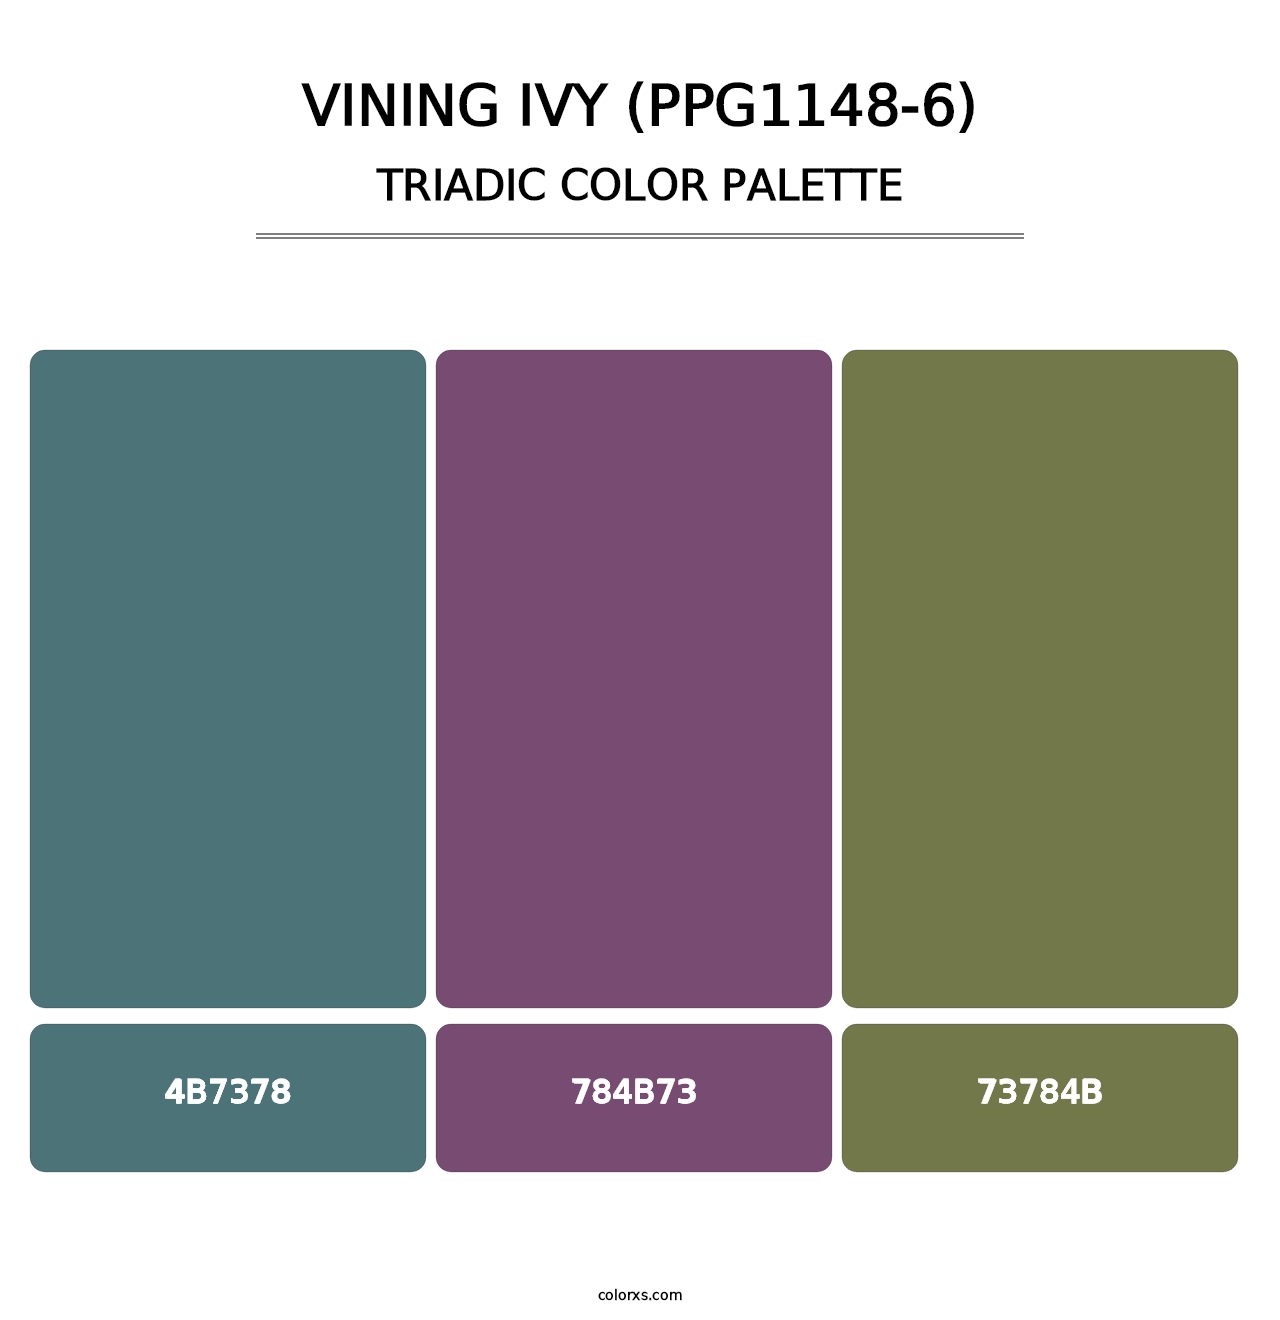 Vining Ivy (PPG1148-6) - Triadic Color Palette